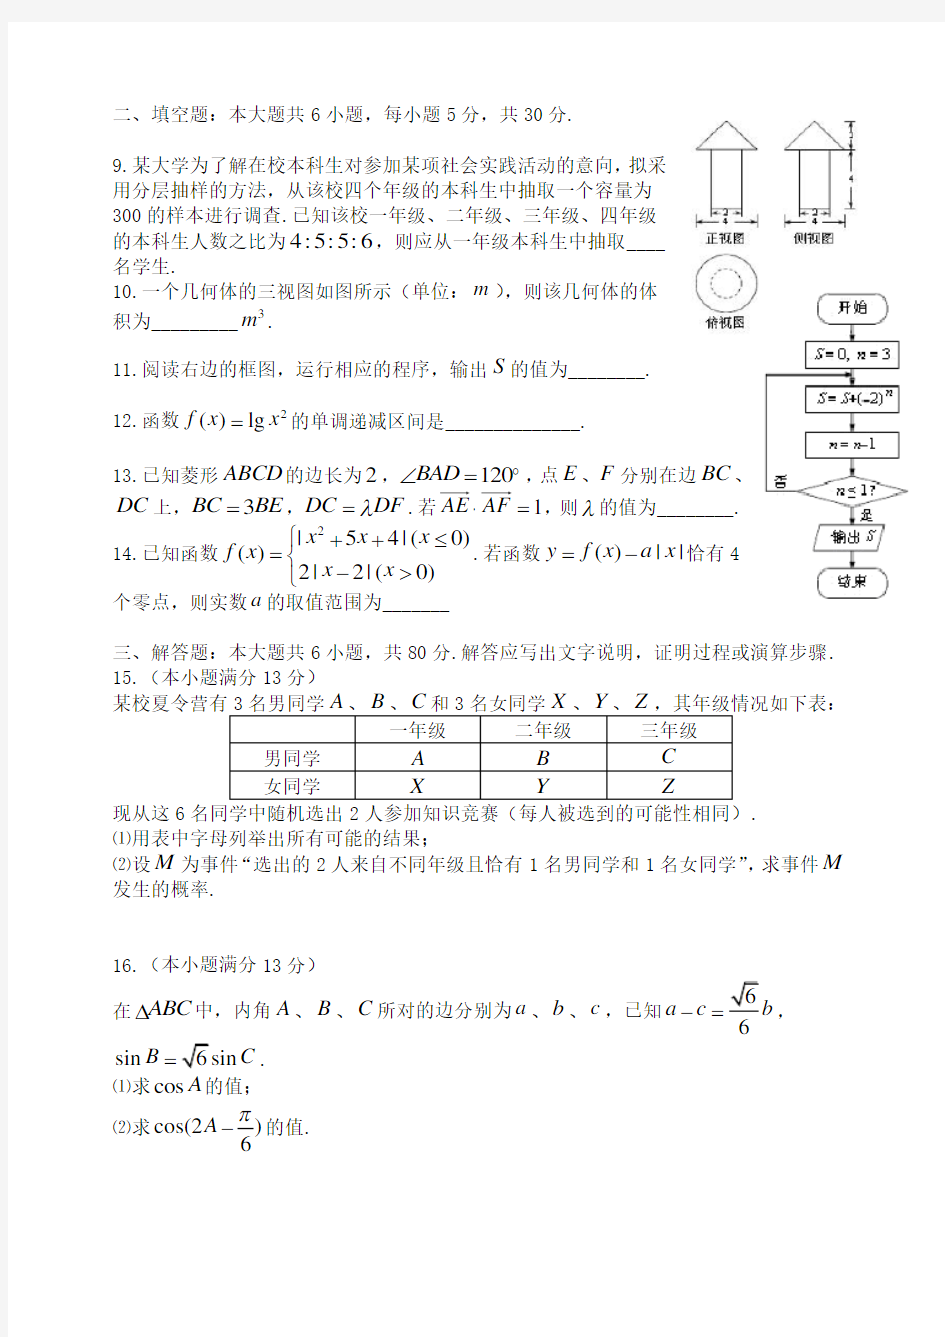 2014年高考文科数学试题(天津卷)及参考答案